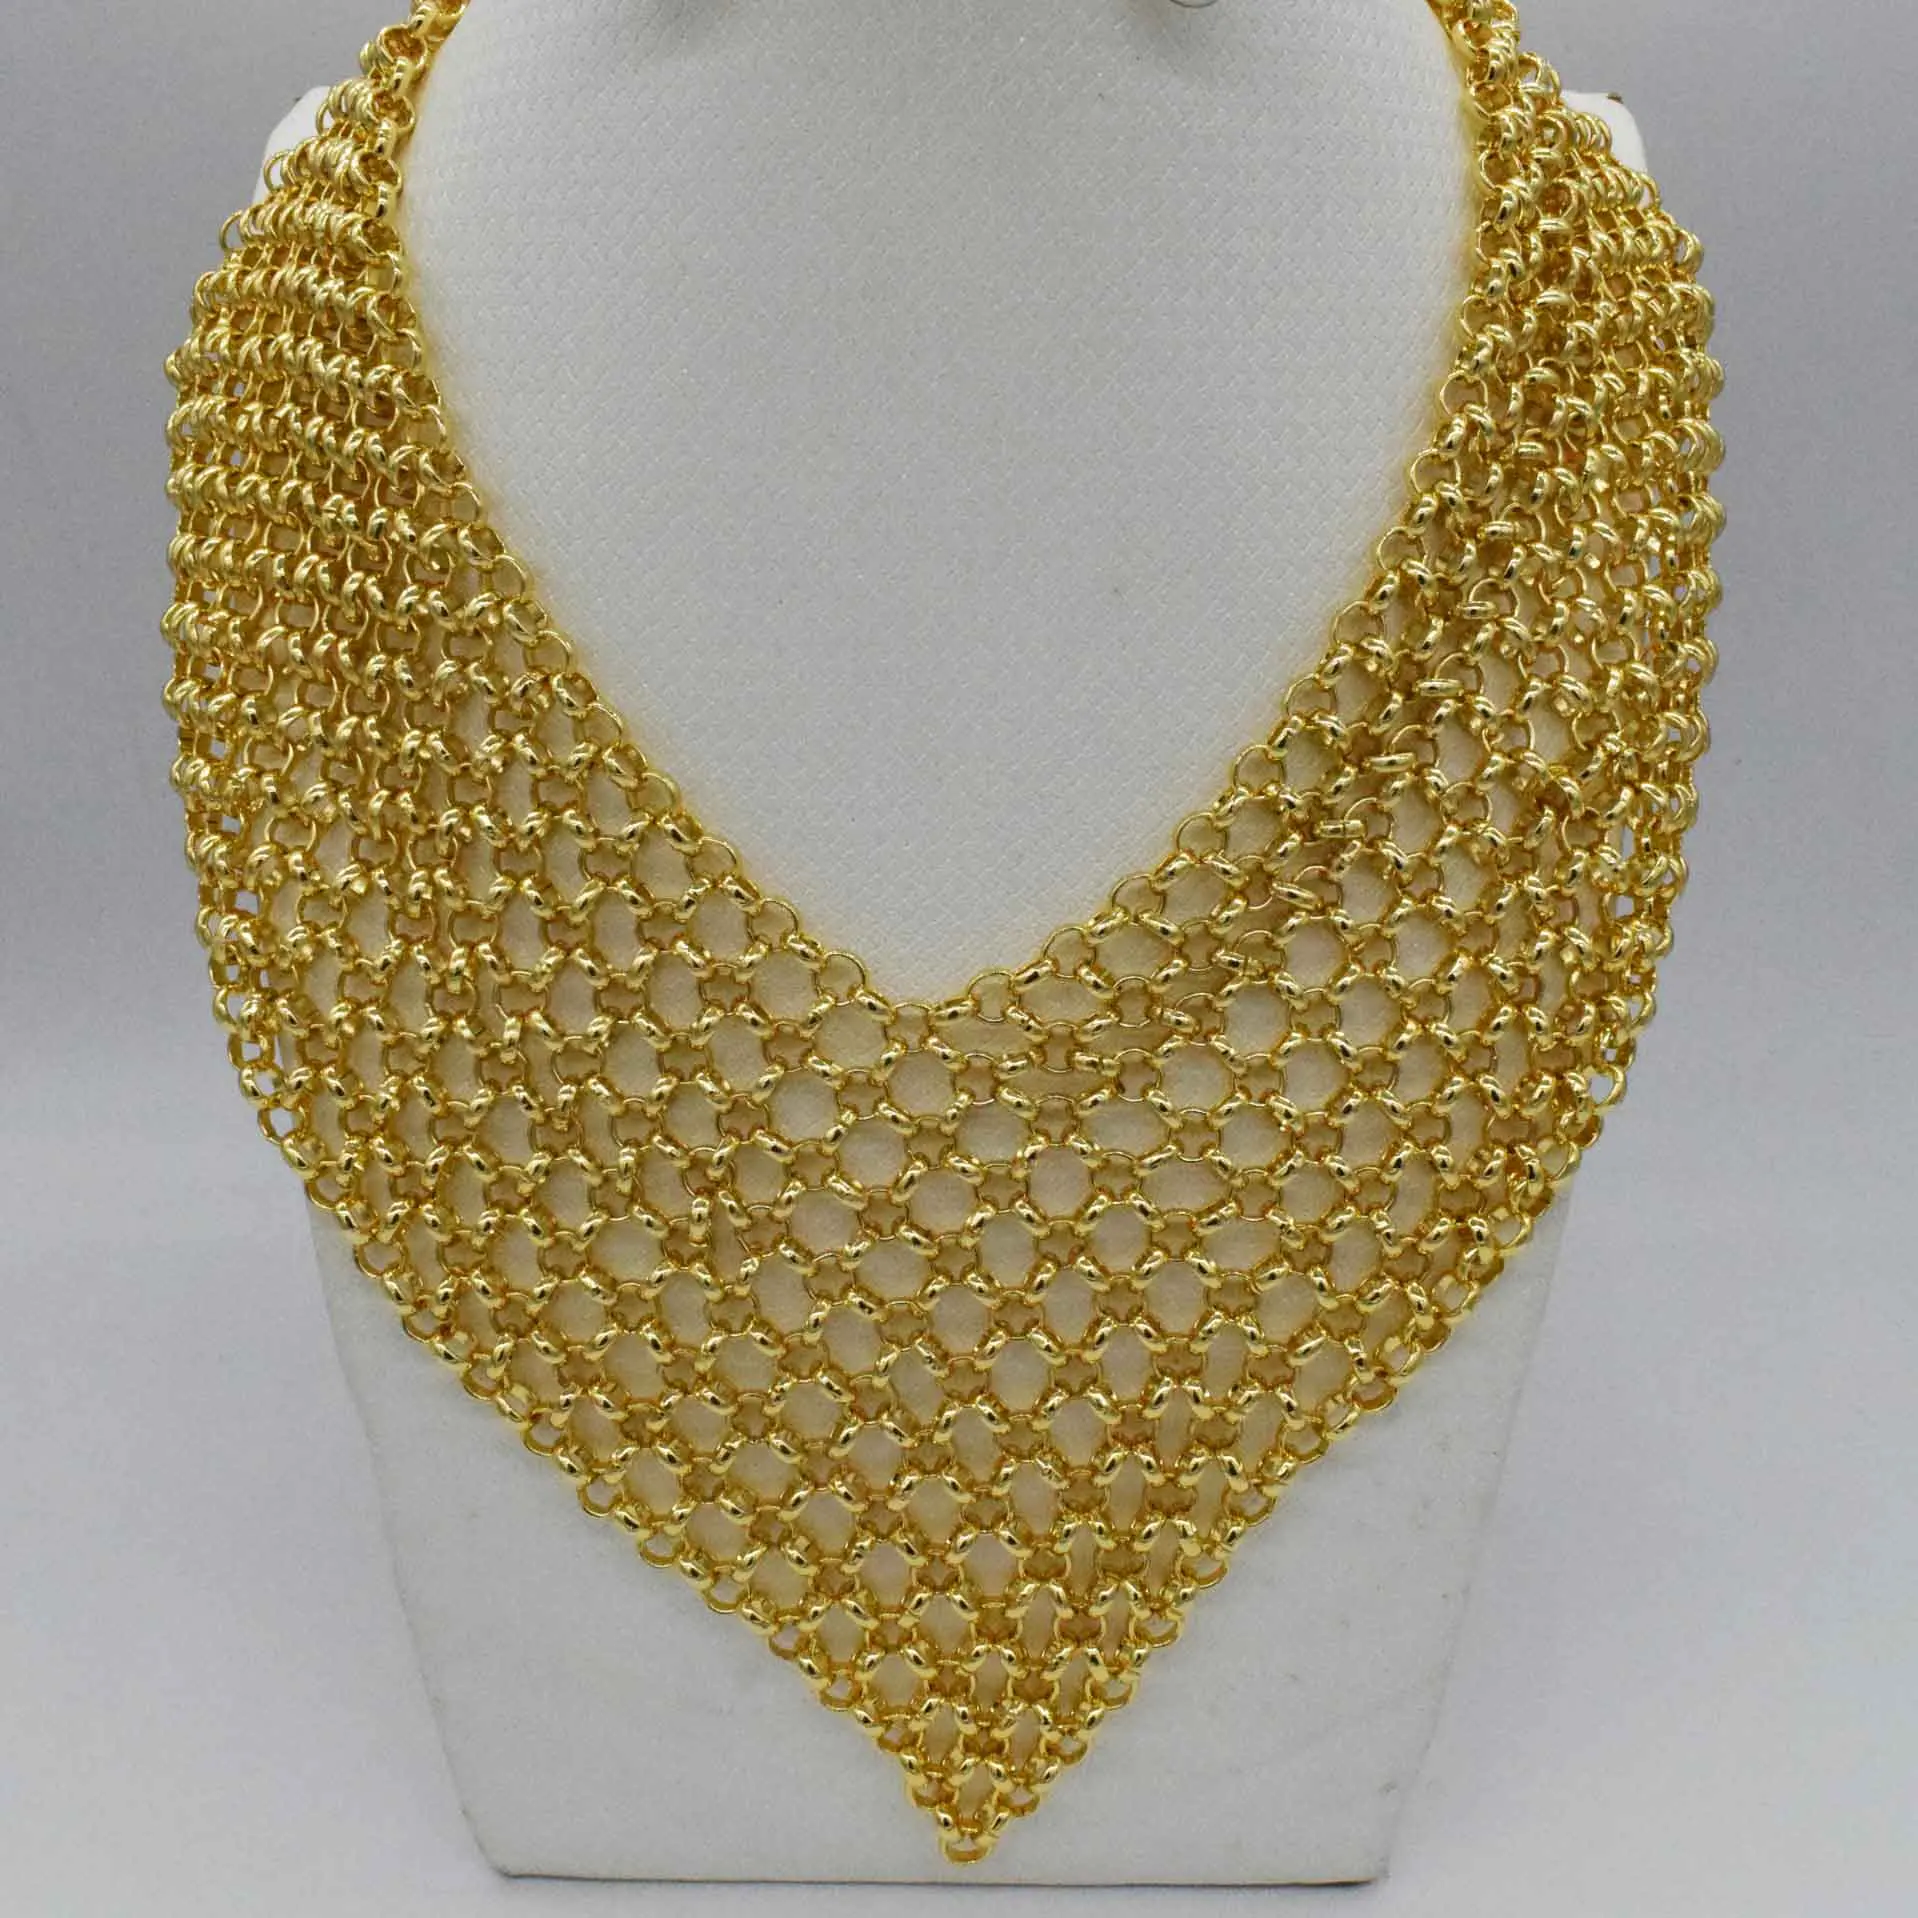 Preise 2019 braut Geschenk Nigerian Hochzeit Afrikanische Perlen Schmuck Set Marke Frau Mode Dubai Gold Farbe Schmuck Set Großhandel Design